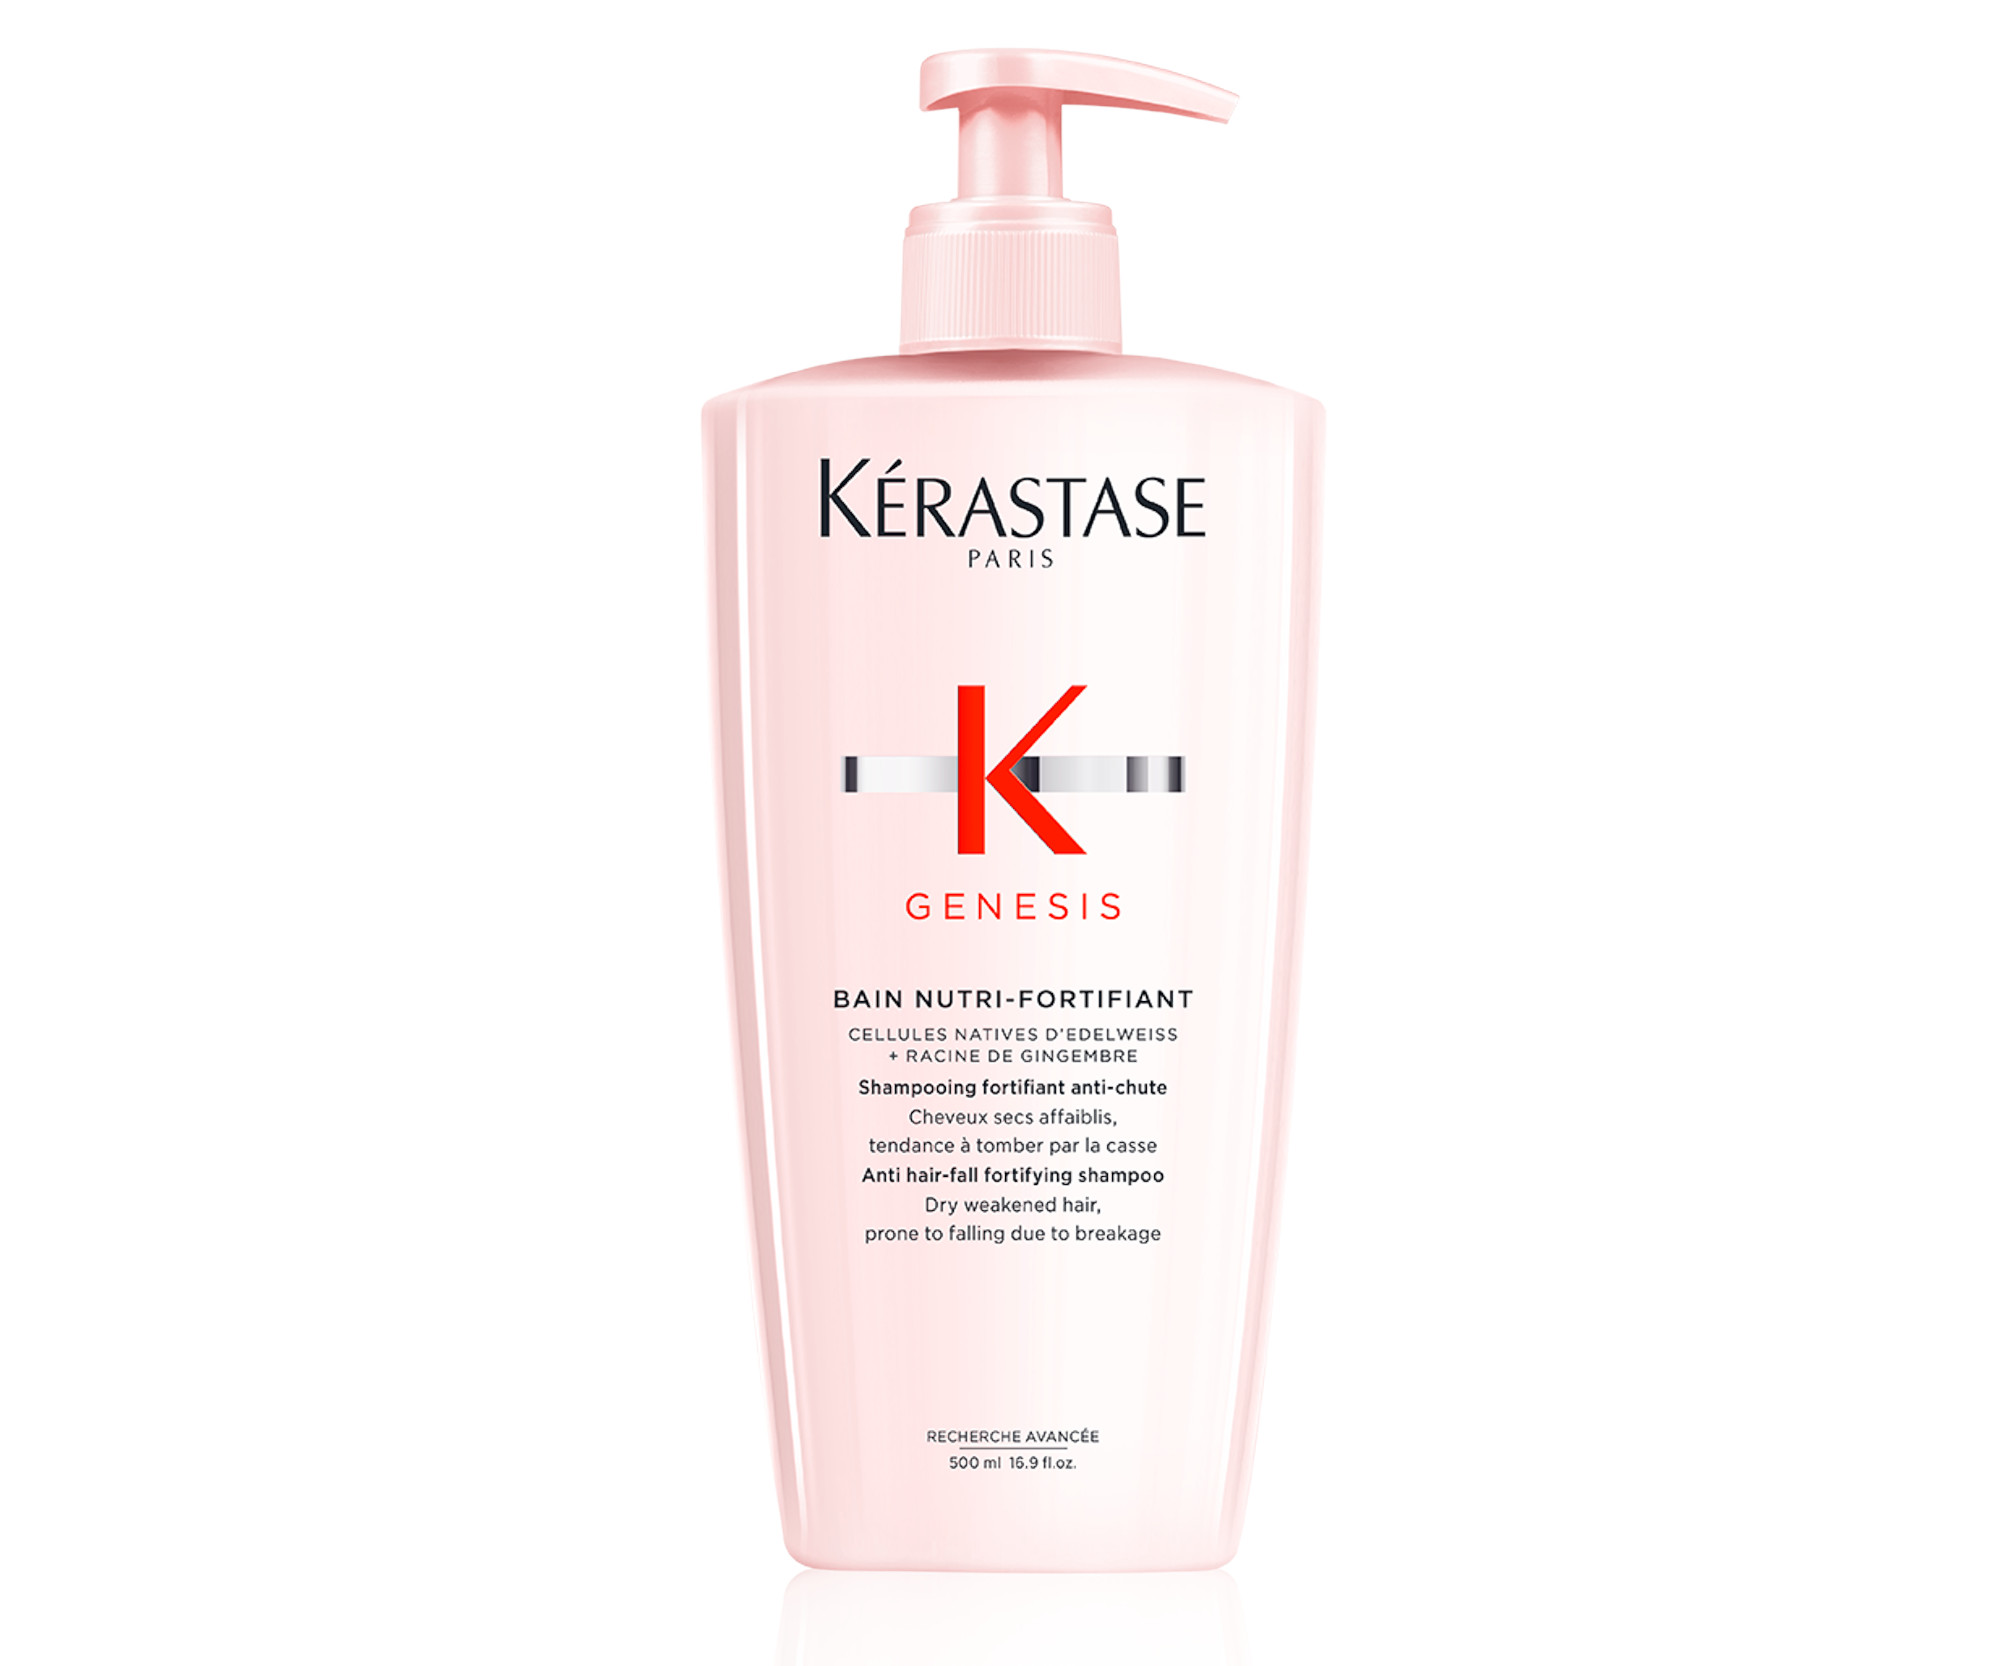 Vyživující šampon pro suché vlasy se sklonem k padání Kérastase Genesis - 500 ml + DÁREK ZDARMA